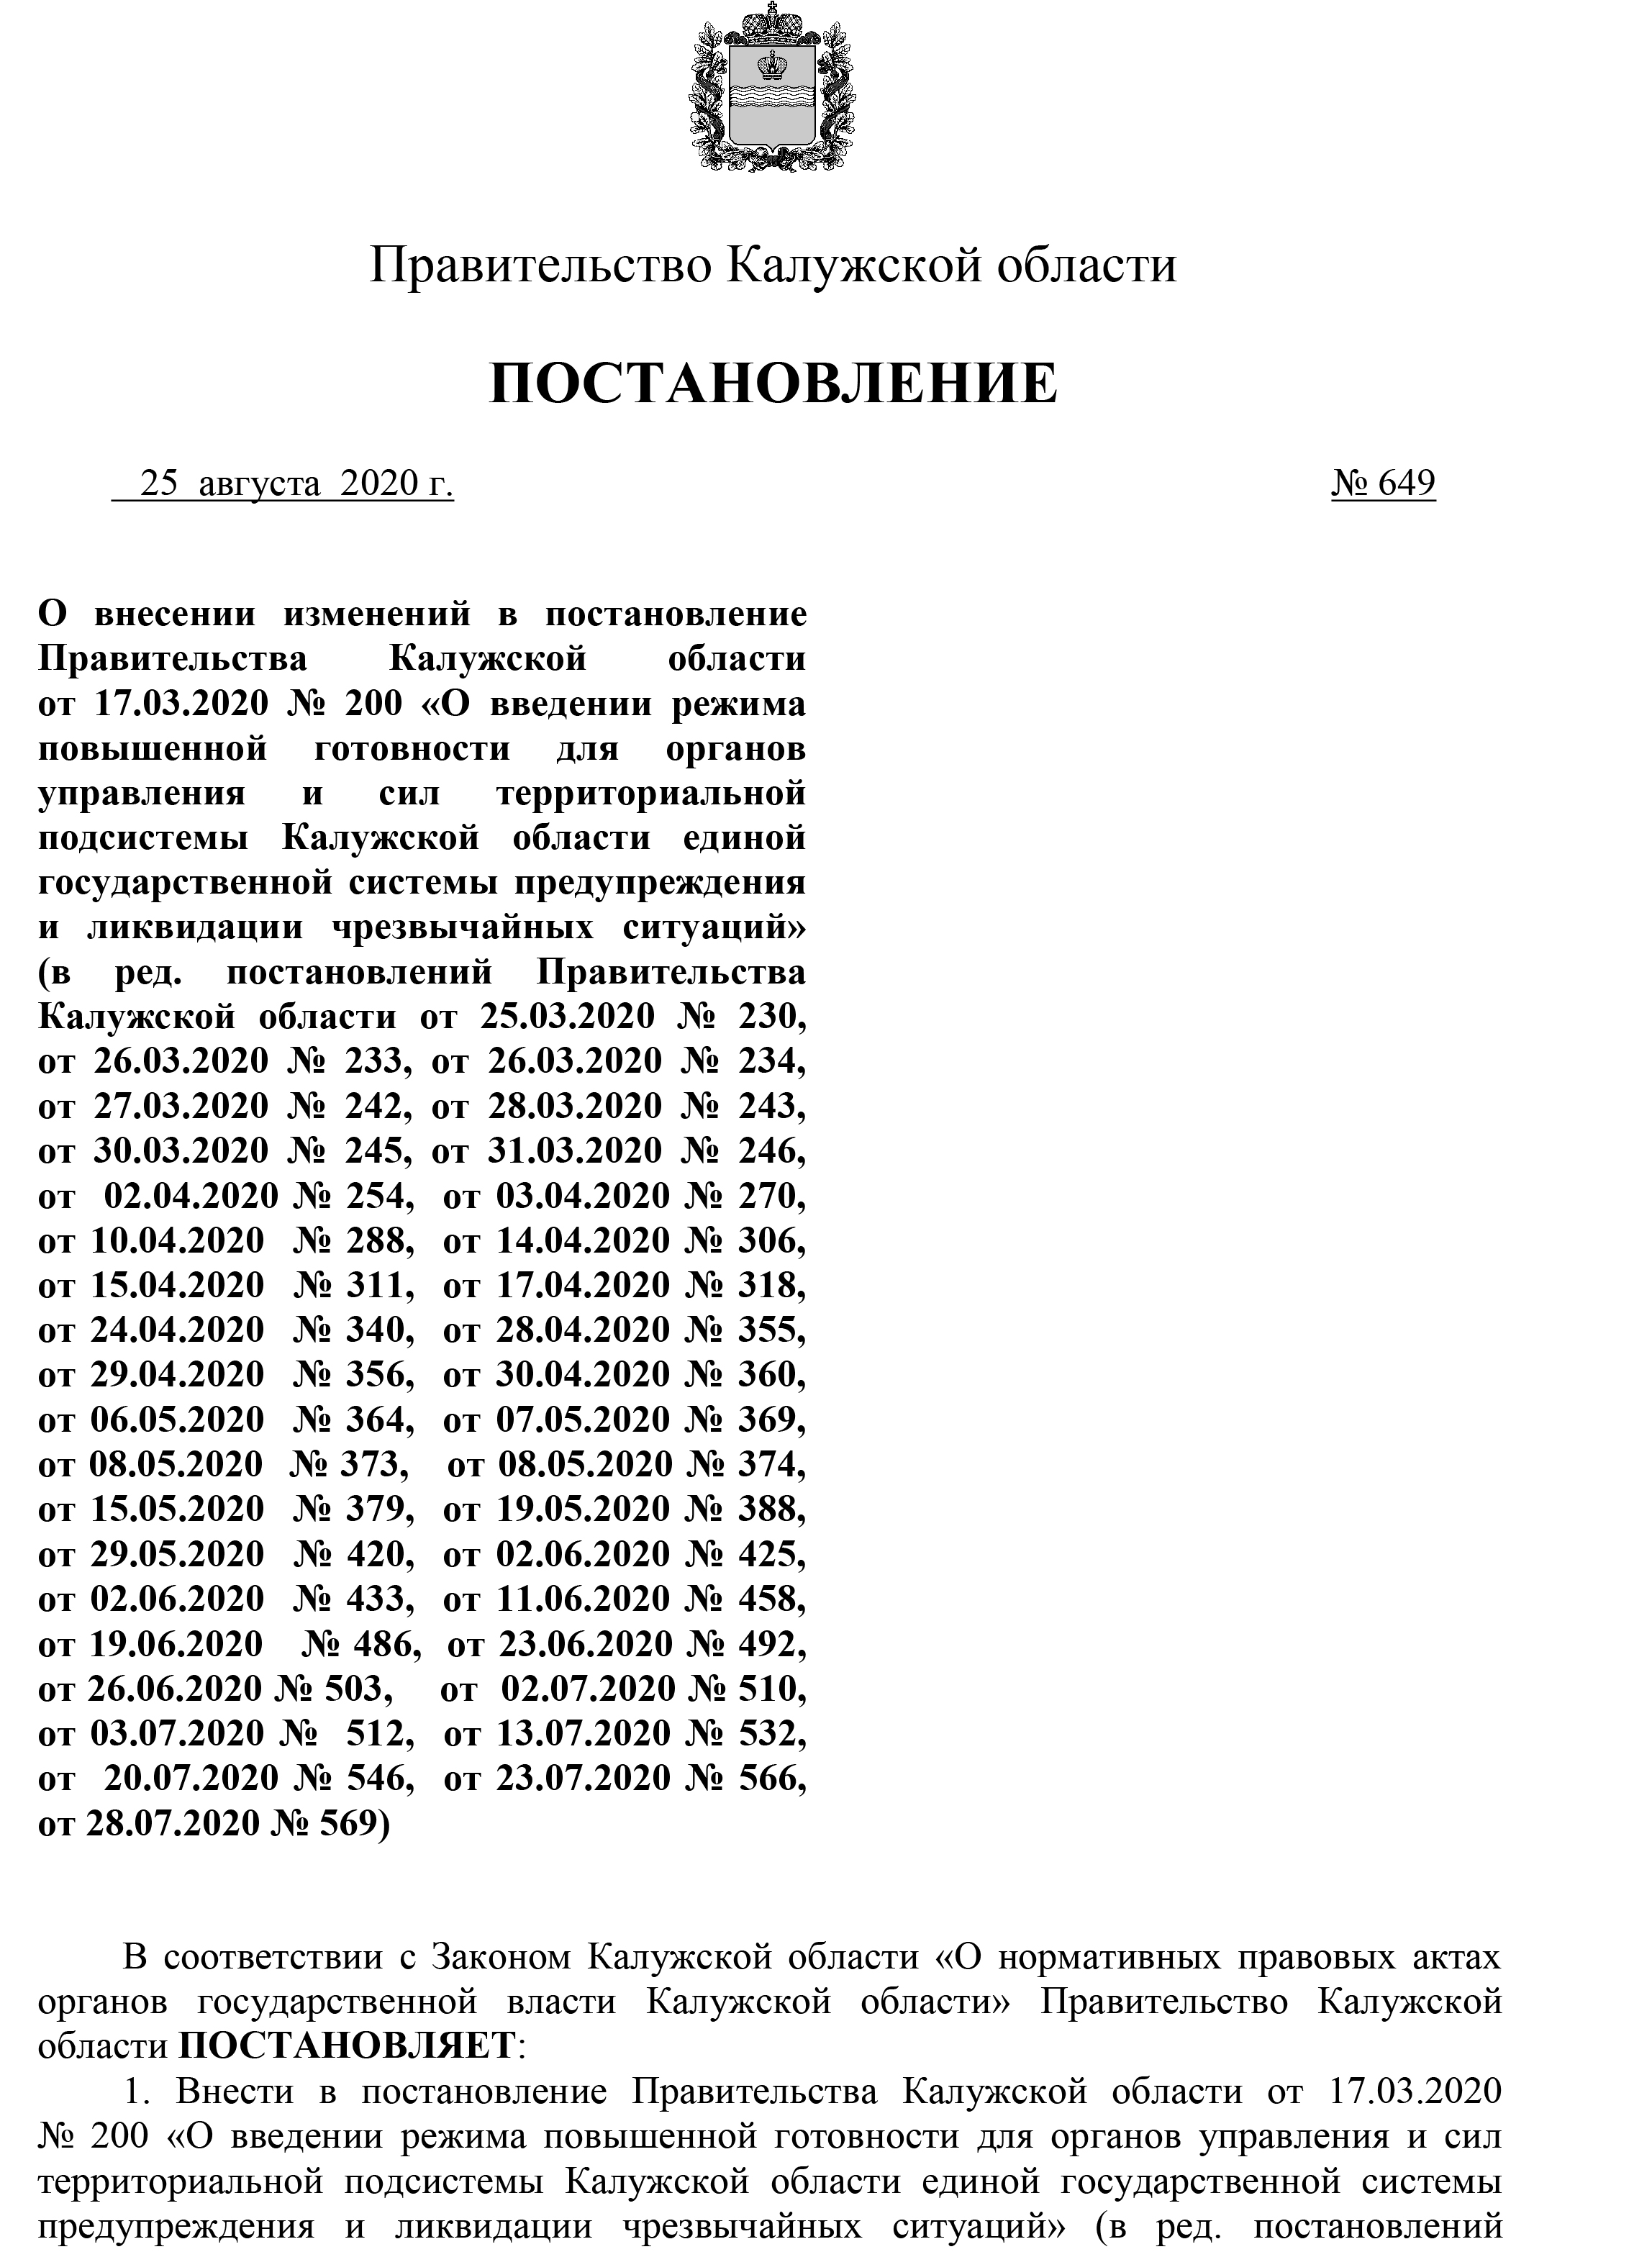 Постановление правительства Калужской области №649 от 25.08.2020